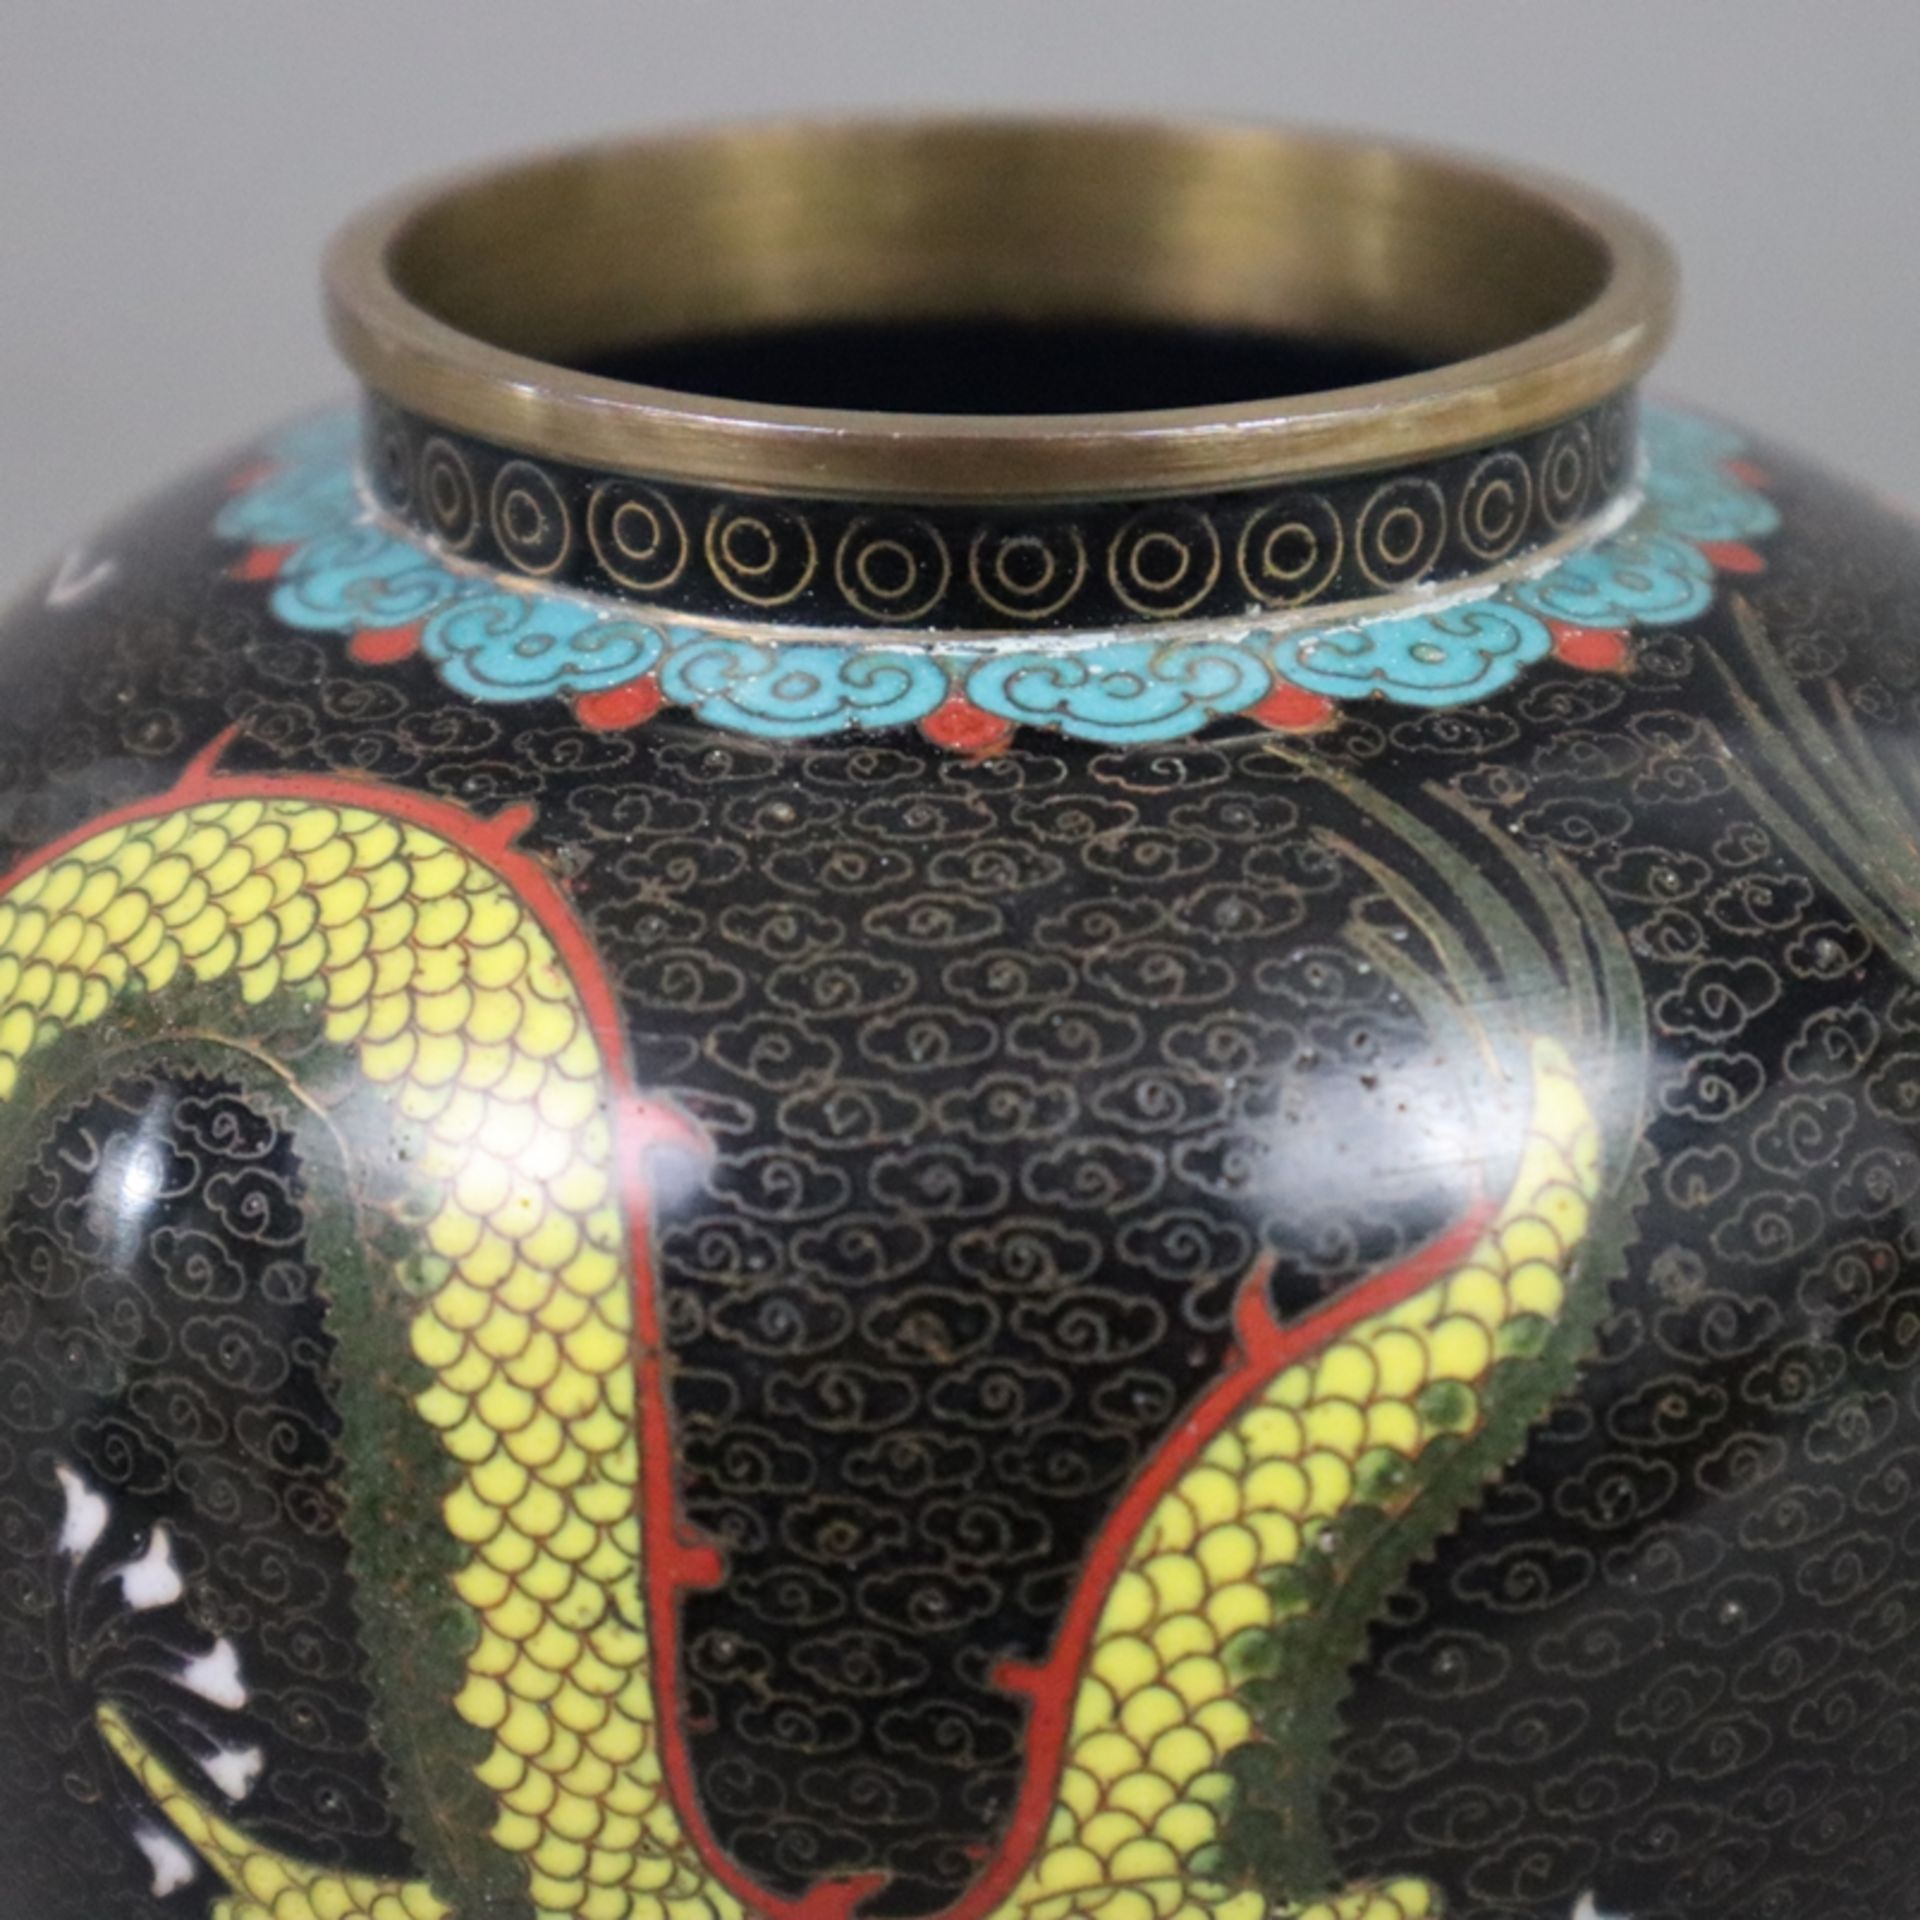 Cloisonné-Deckelvase mit Drachendekor - China, 20. Jh., Bronzelegierung, polychromes Email-Cloisonn - Bild 6 aus 7